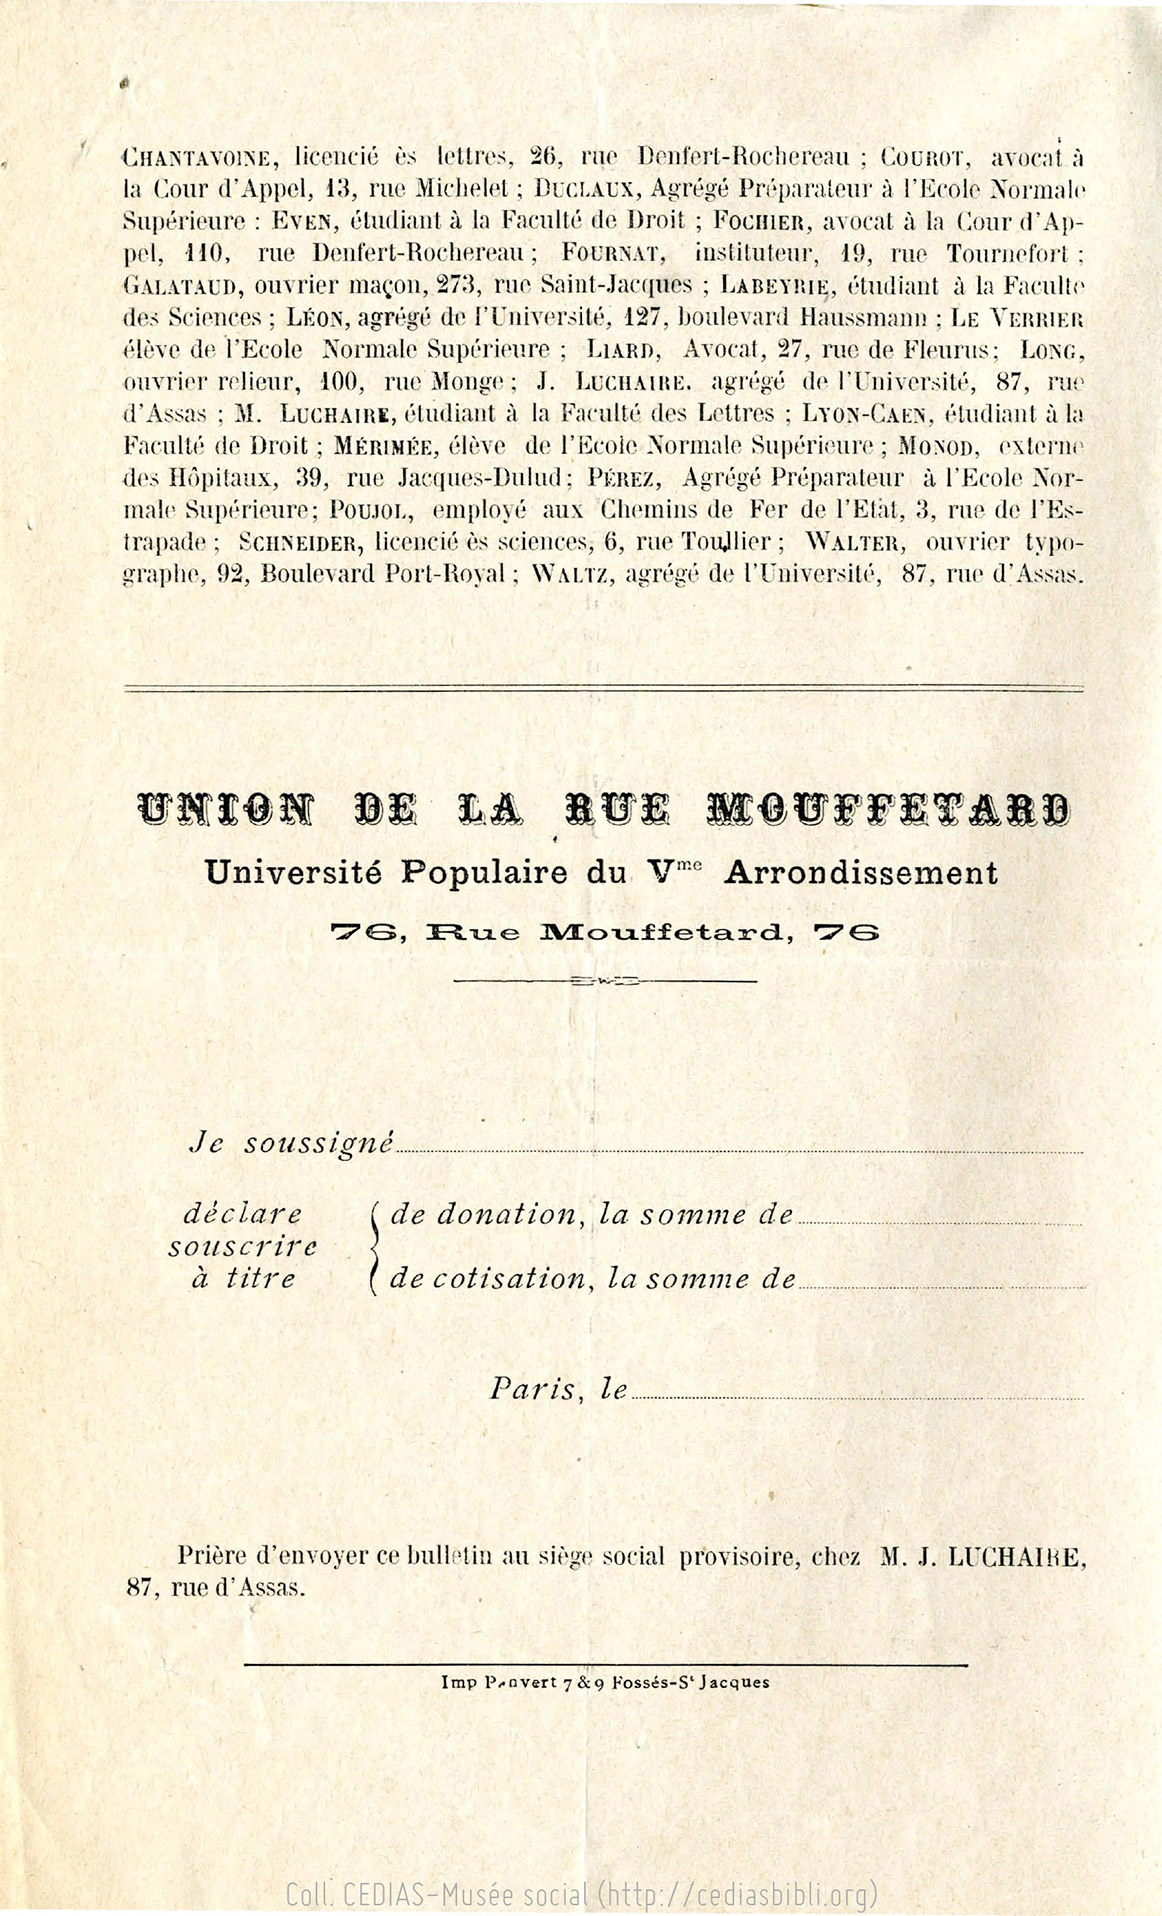 Union de la rue Mouffetard : Université Populaire du Ve arrondissement, 76 rue Mouffetard, tract, 1902